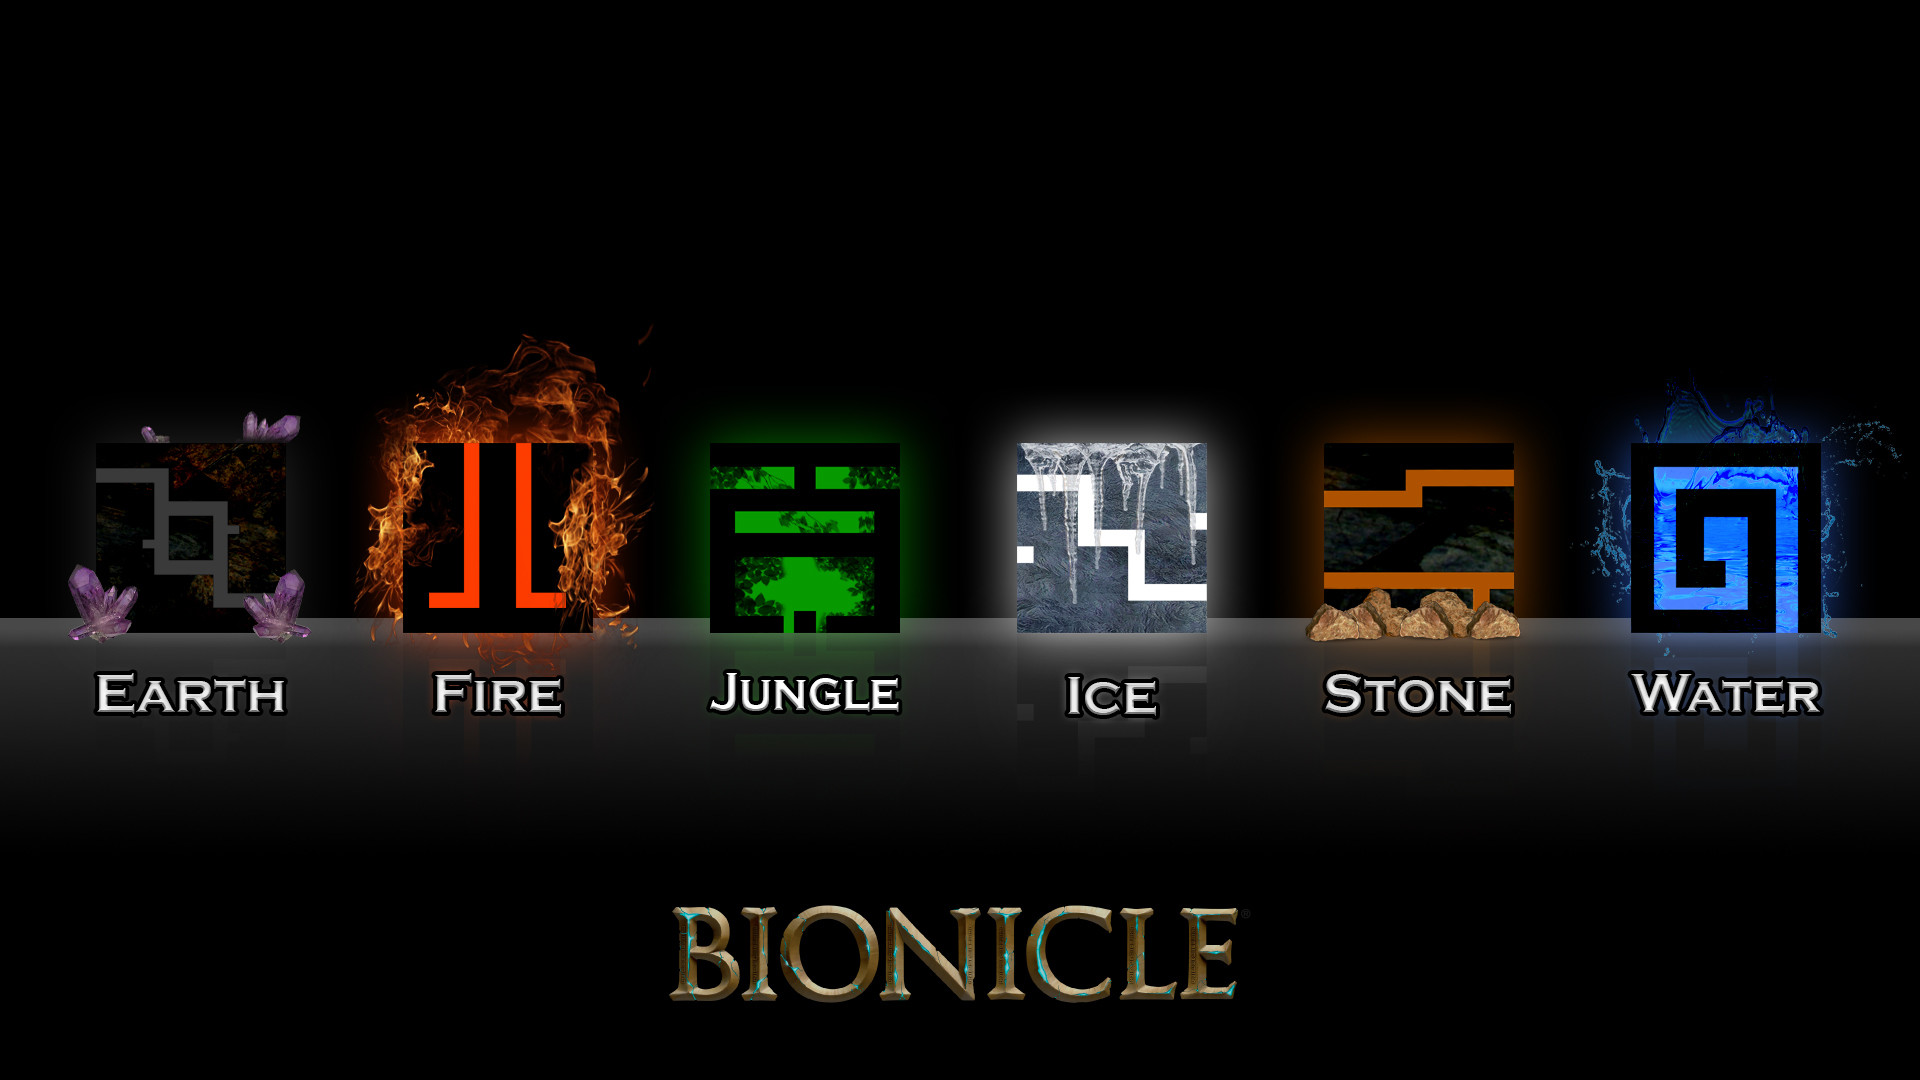 1920x1080 Bionicle Toa Symbols.jpg 495 KB